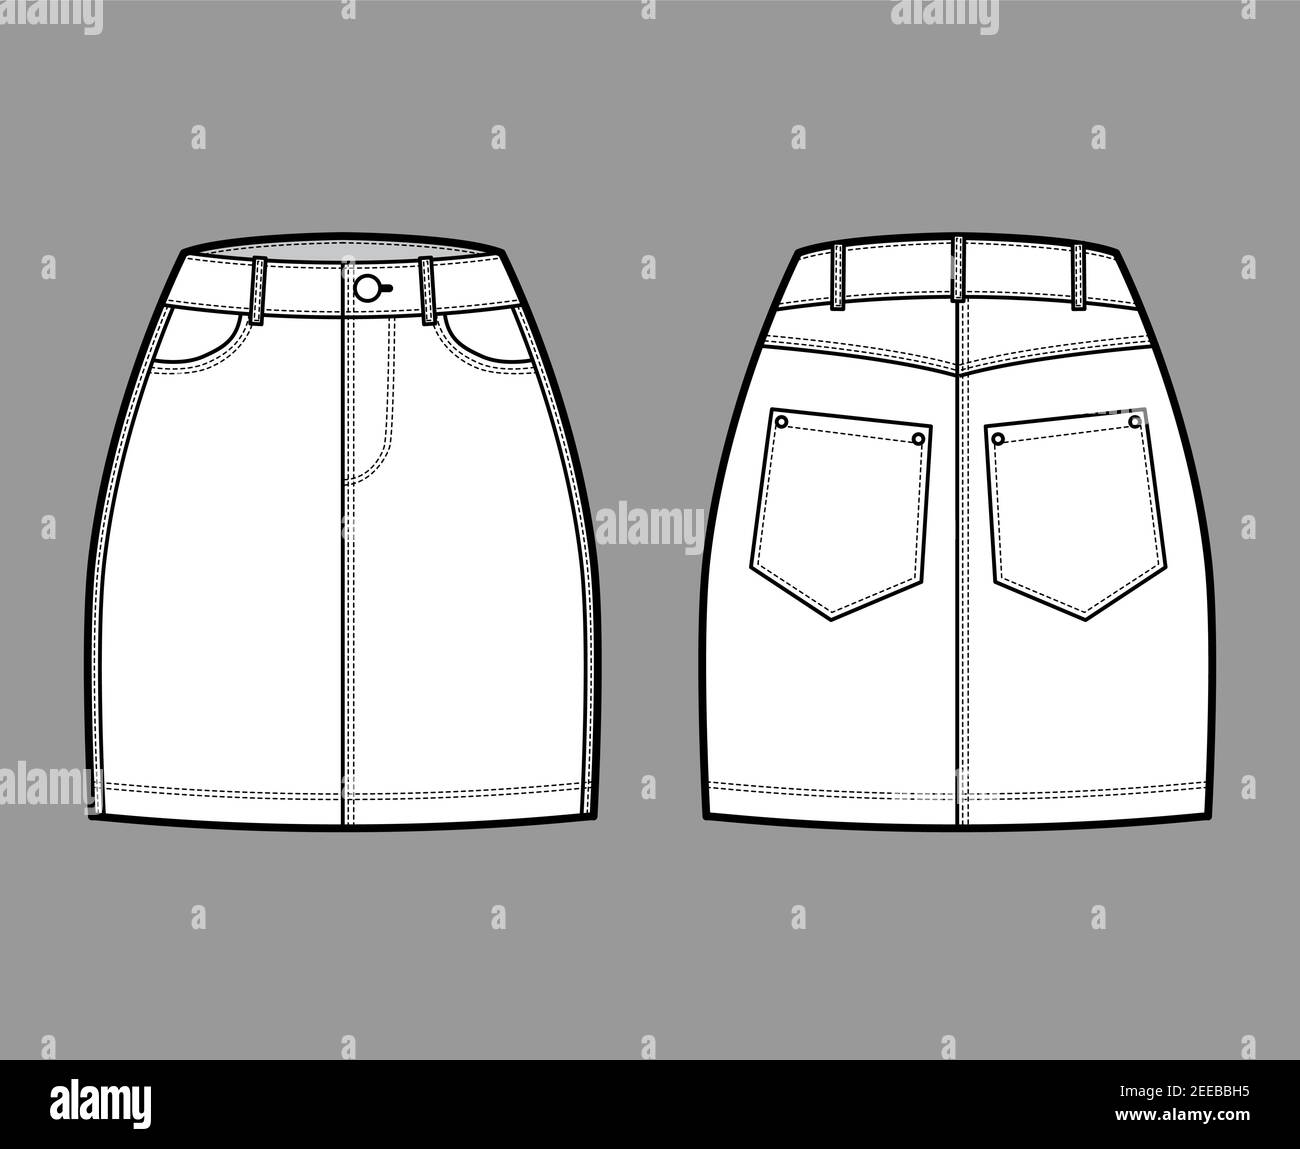 Denim mini skirt Stock Vector Images - Alamy